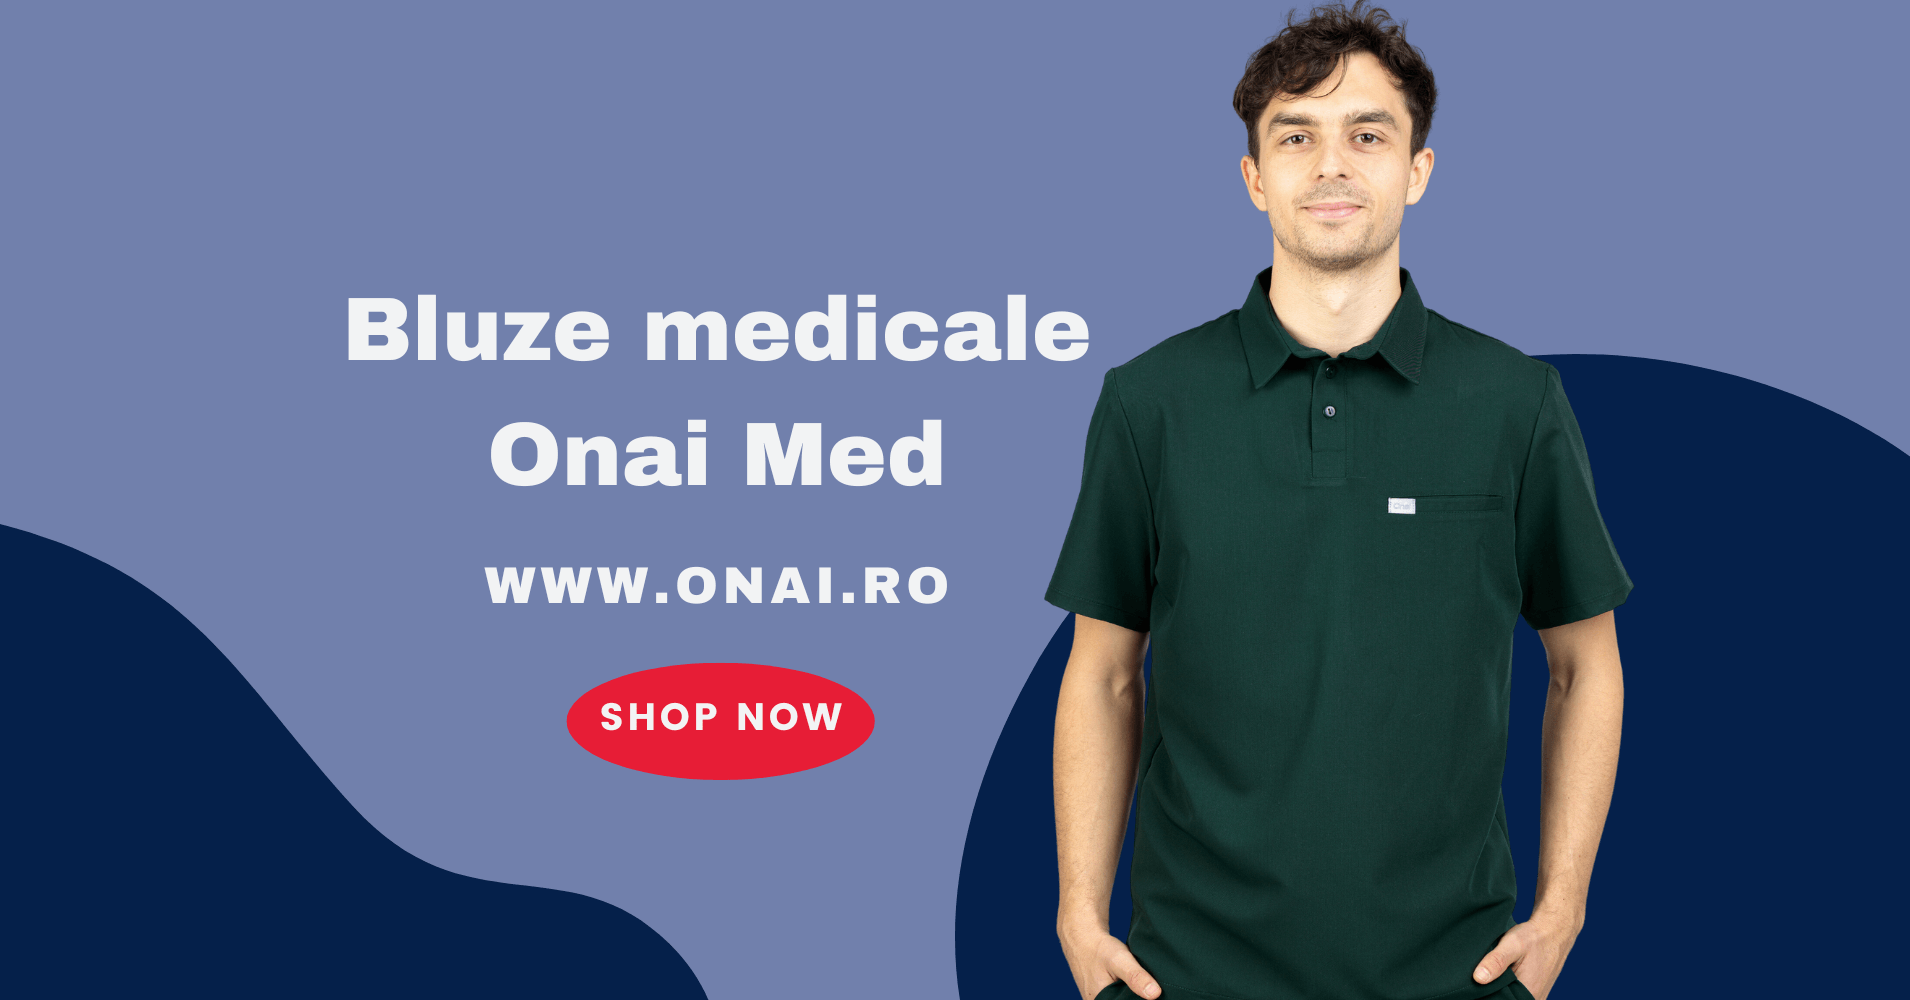 Bluze medicale Onai Med